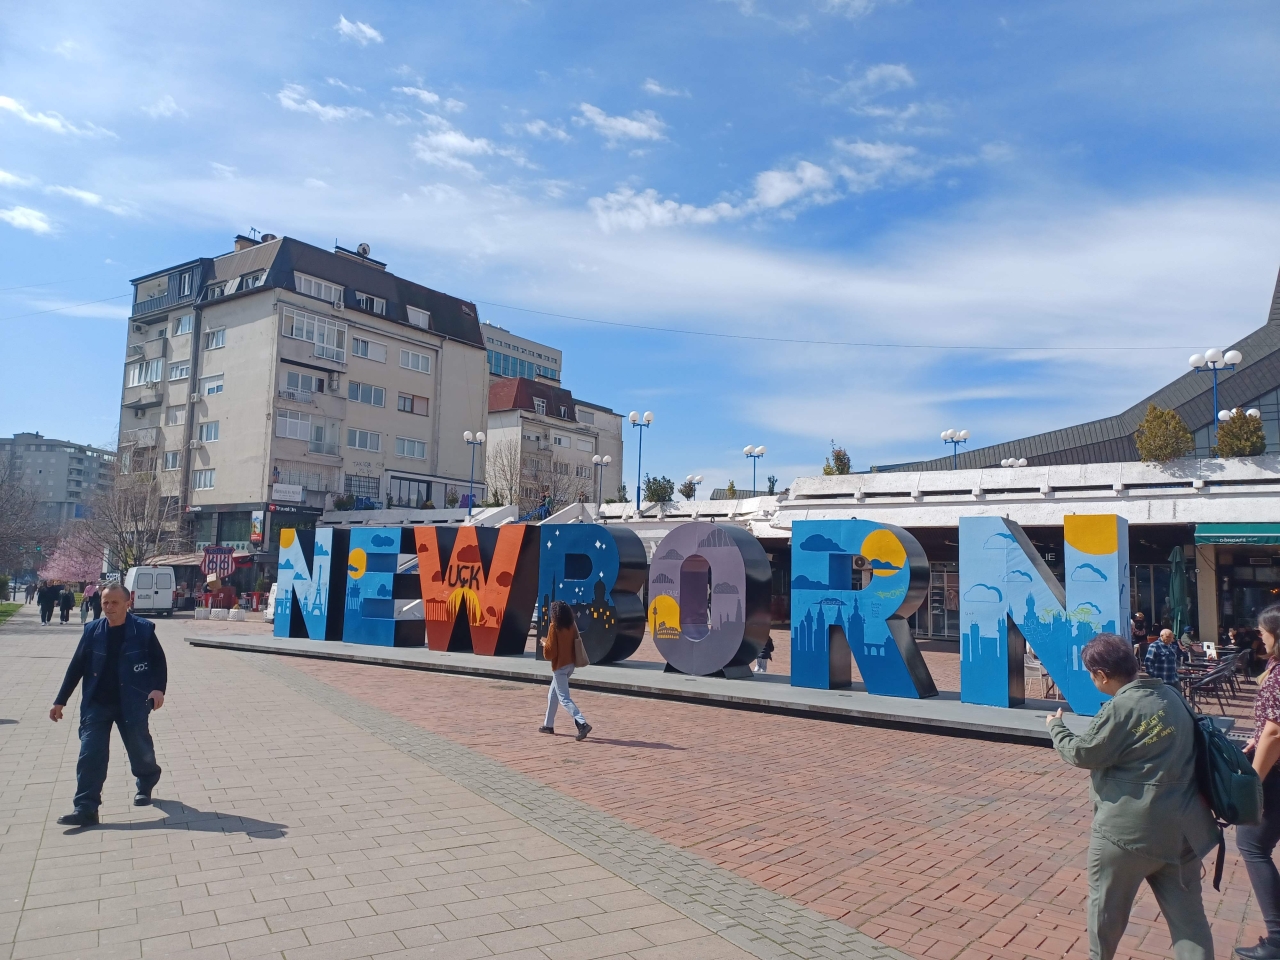 the newborn sign in Kosovo